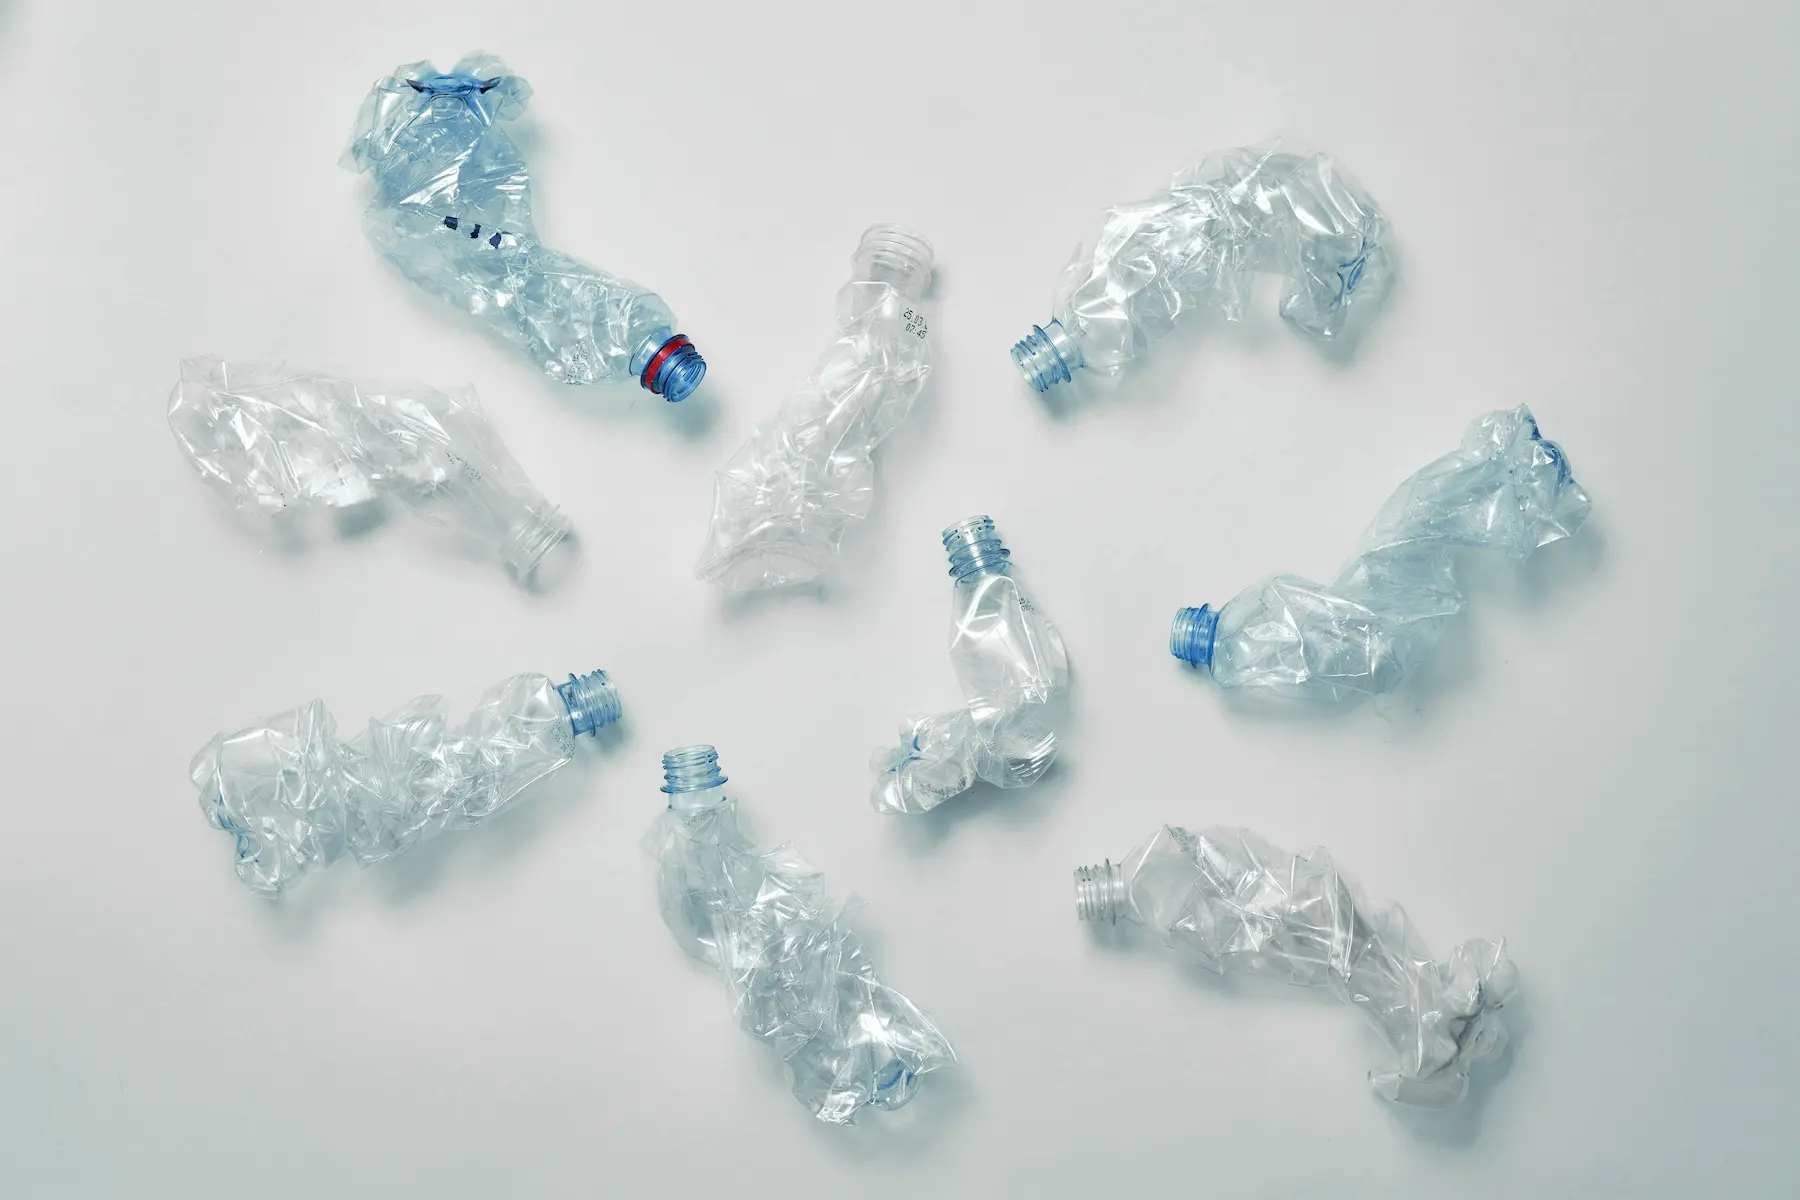 使用済みのペットボトルをヴァージン(未利用)と見違えるほどの再生プラスチック原料にして提供致します。